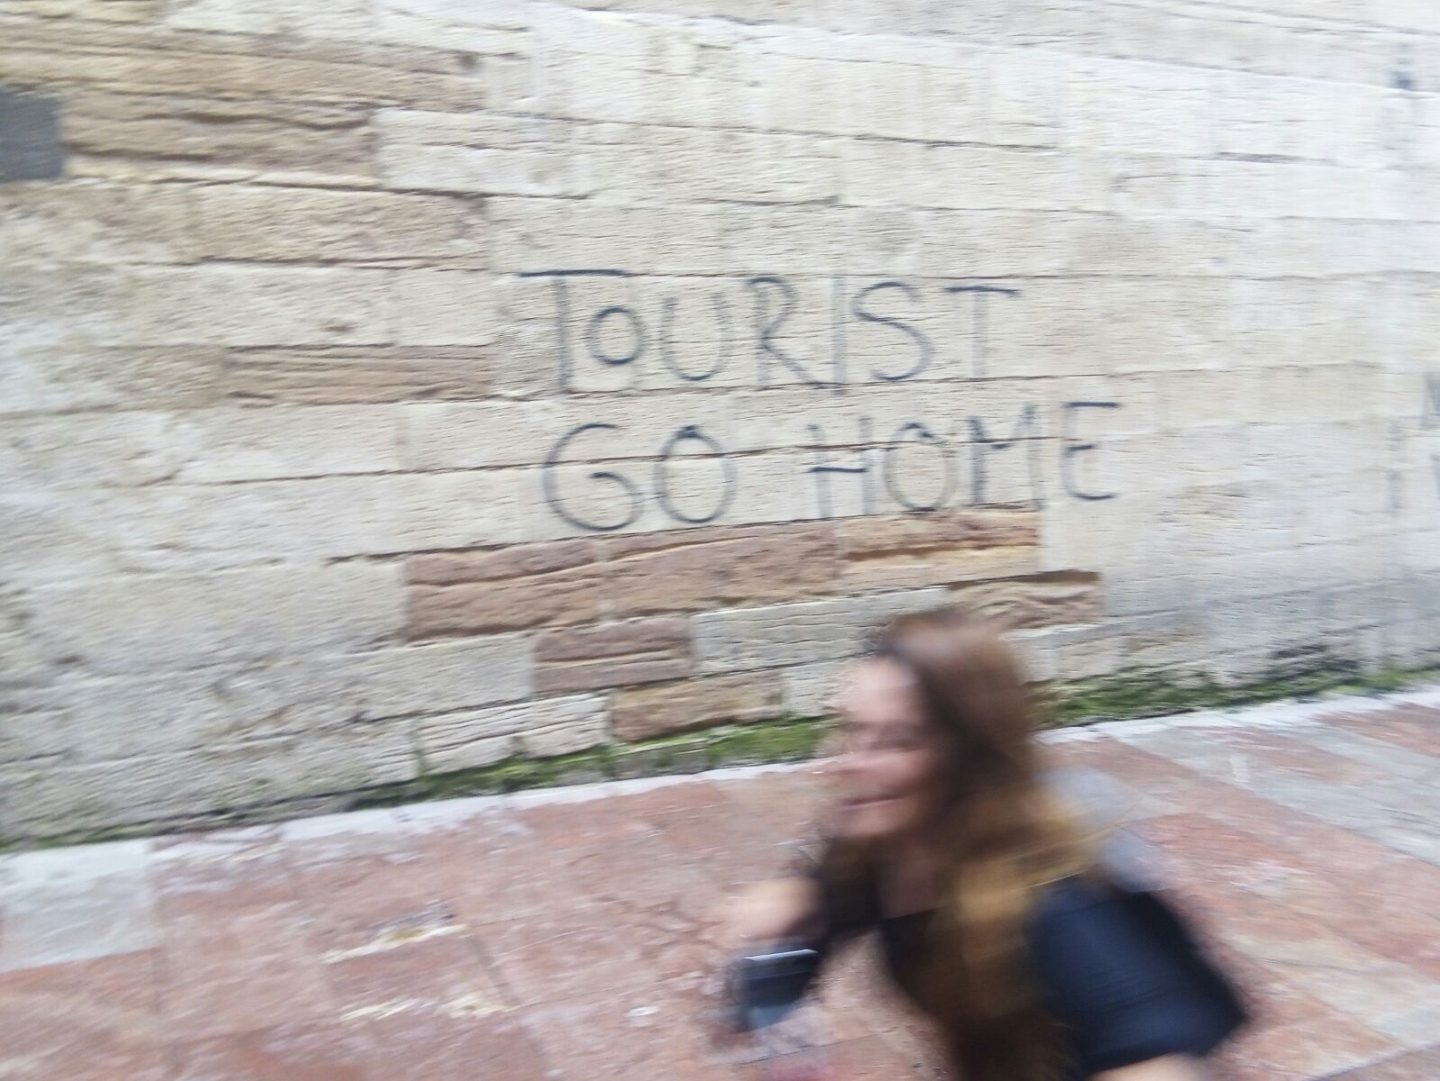 Pintada contra el turismo masivo en Oviedo.